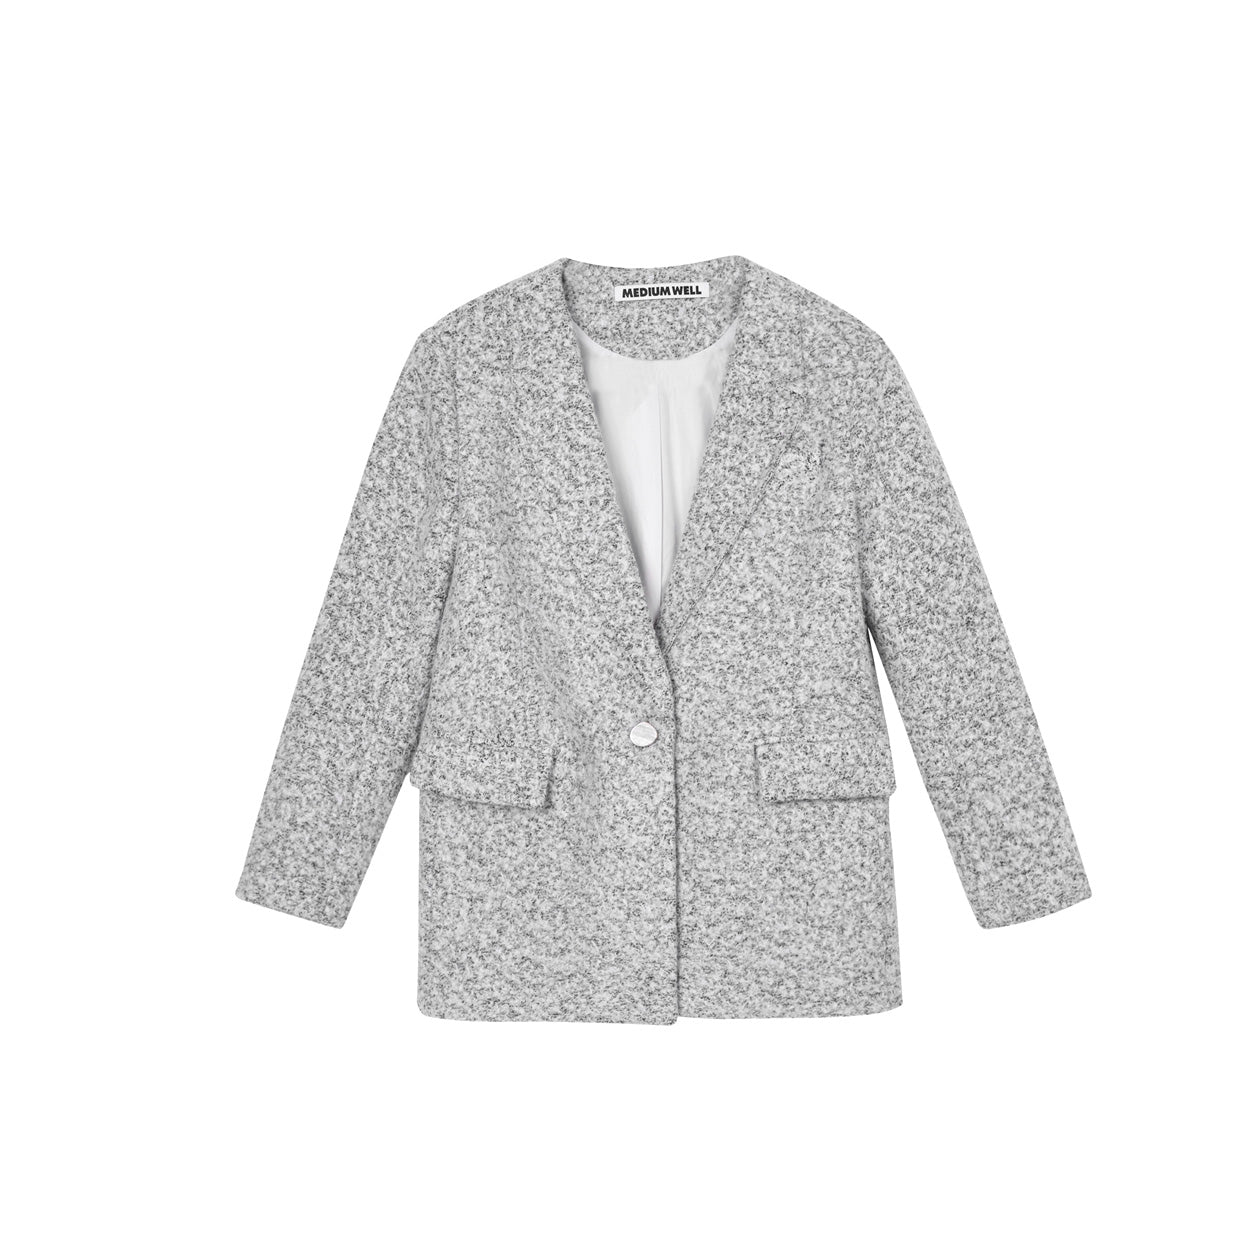 MEDIUM WELL Decorative Collar Fancy Tweed Jacket | MADA IN CHINA